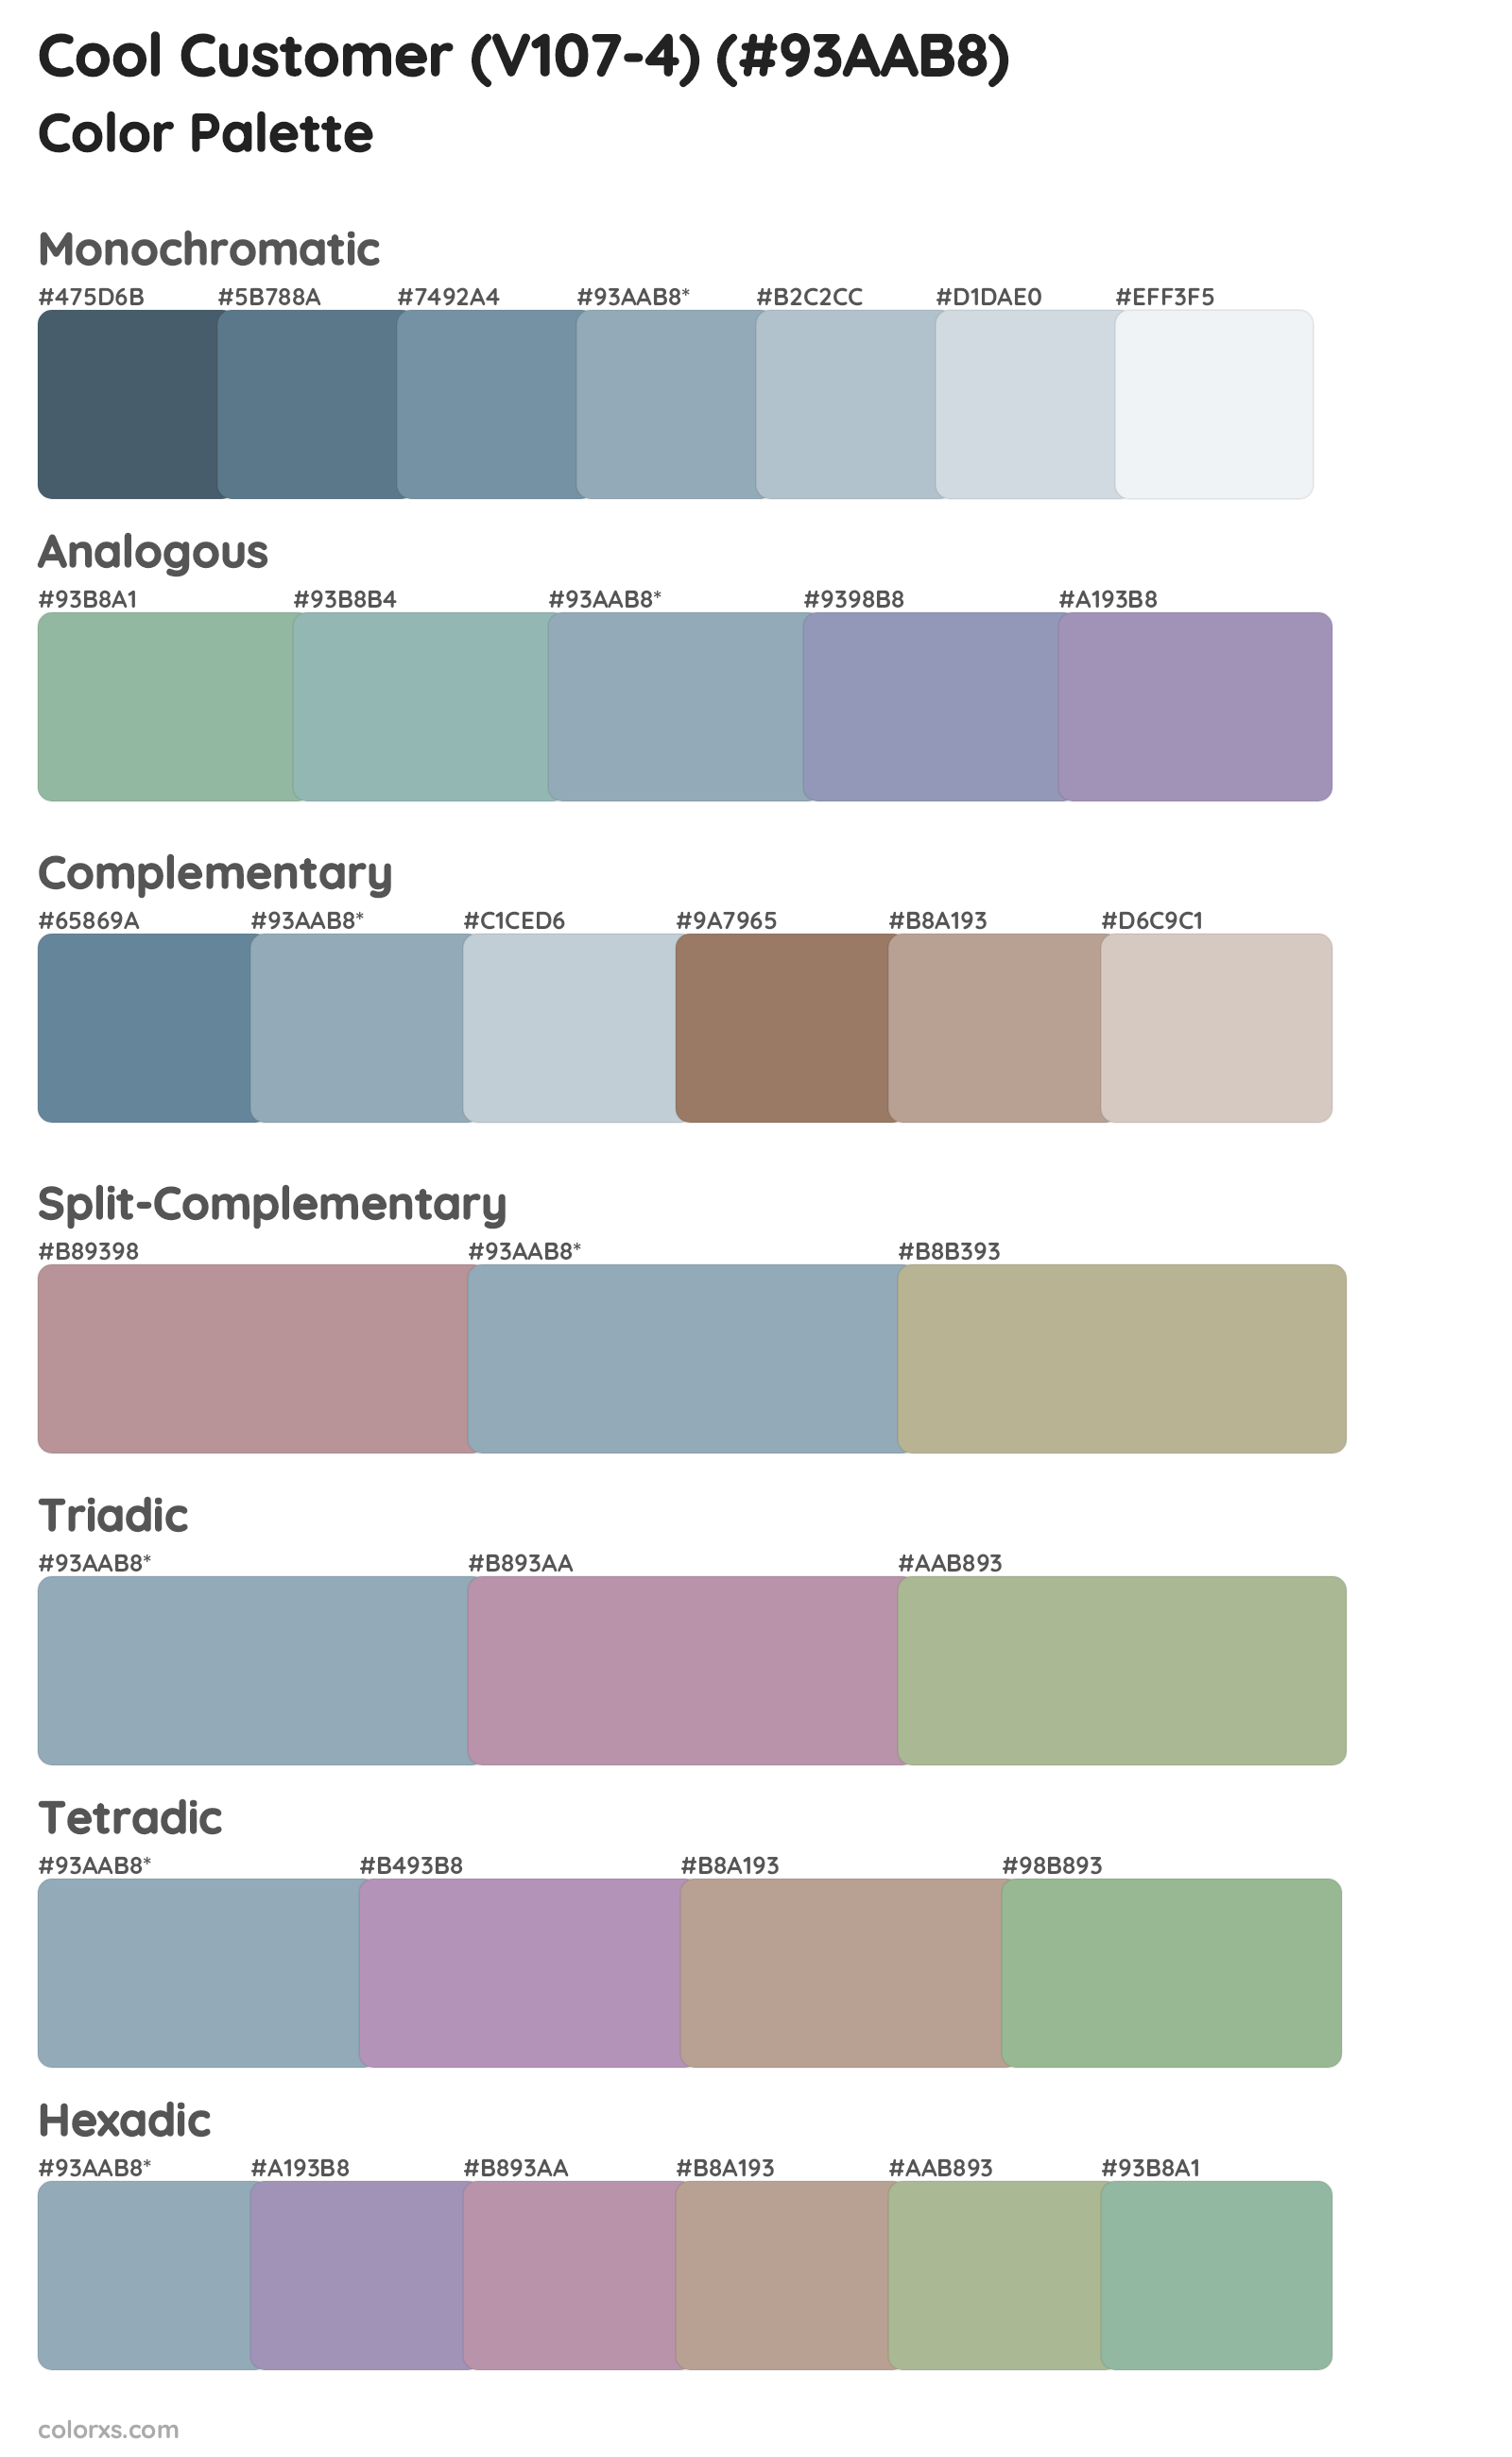 Cool Customer (V107-4) Color Scheme Palettes